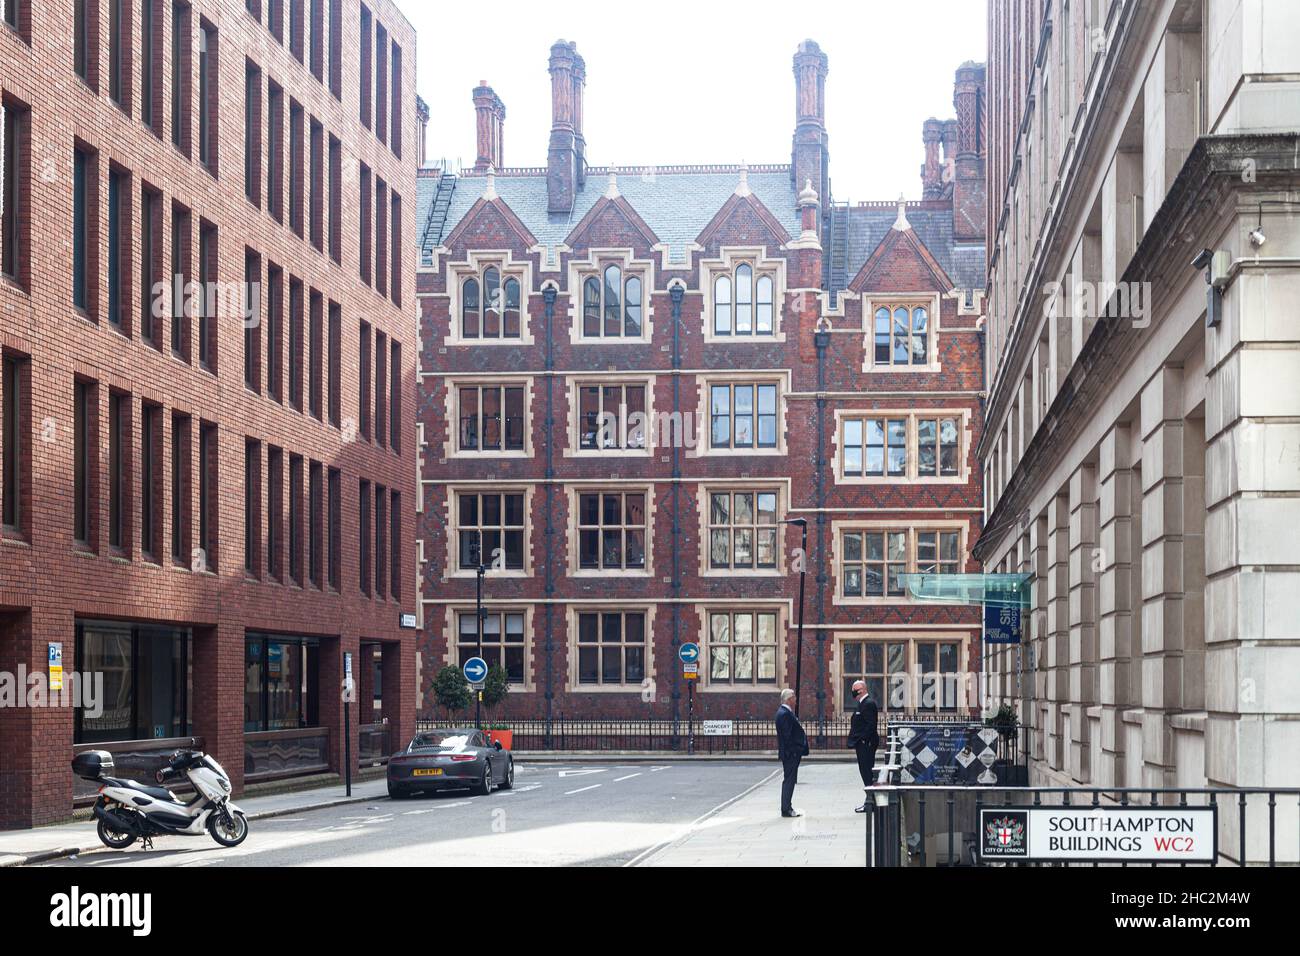 Scena stradale su Southampton Buildings, Londra WC2, Inghilterra, Regno Unito. Foto Stock